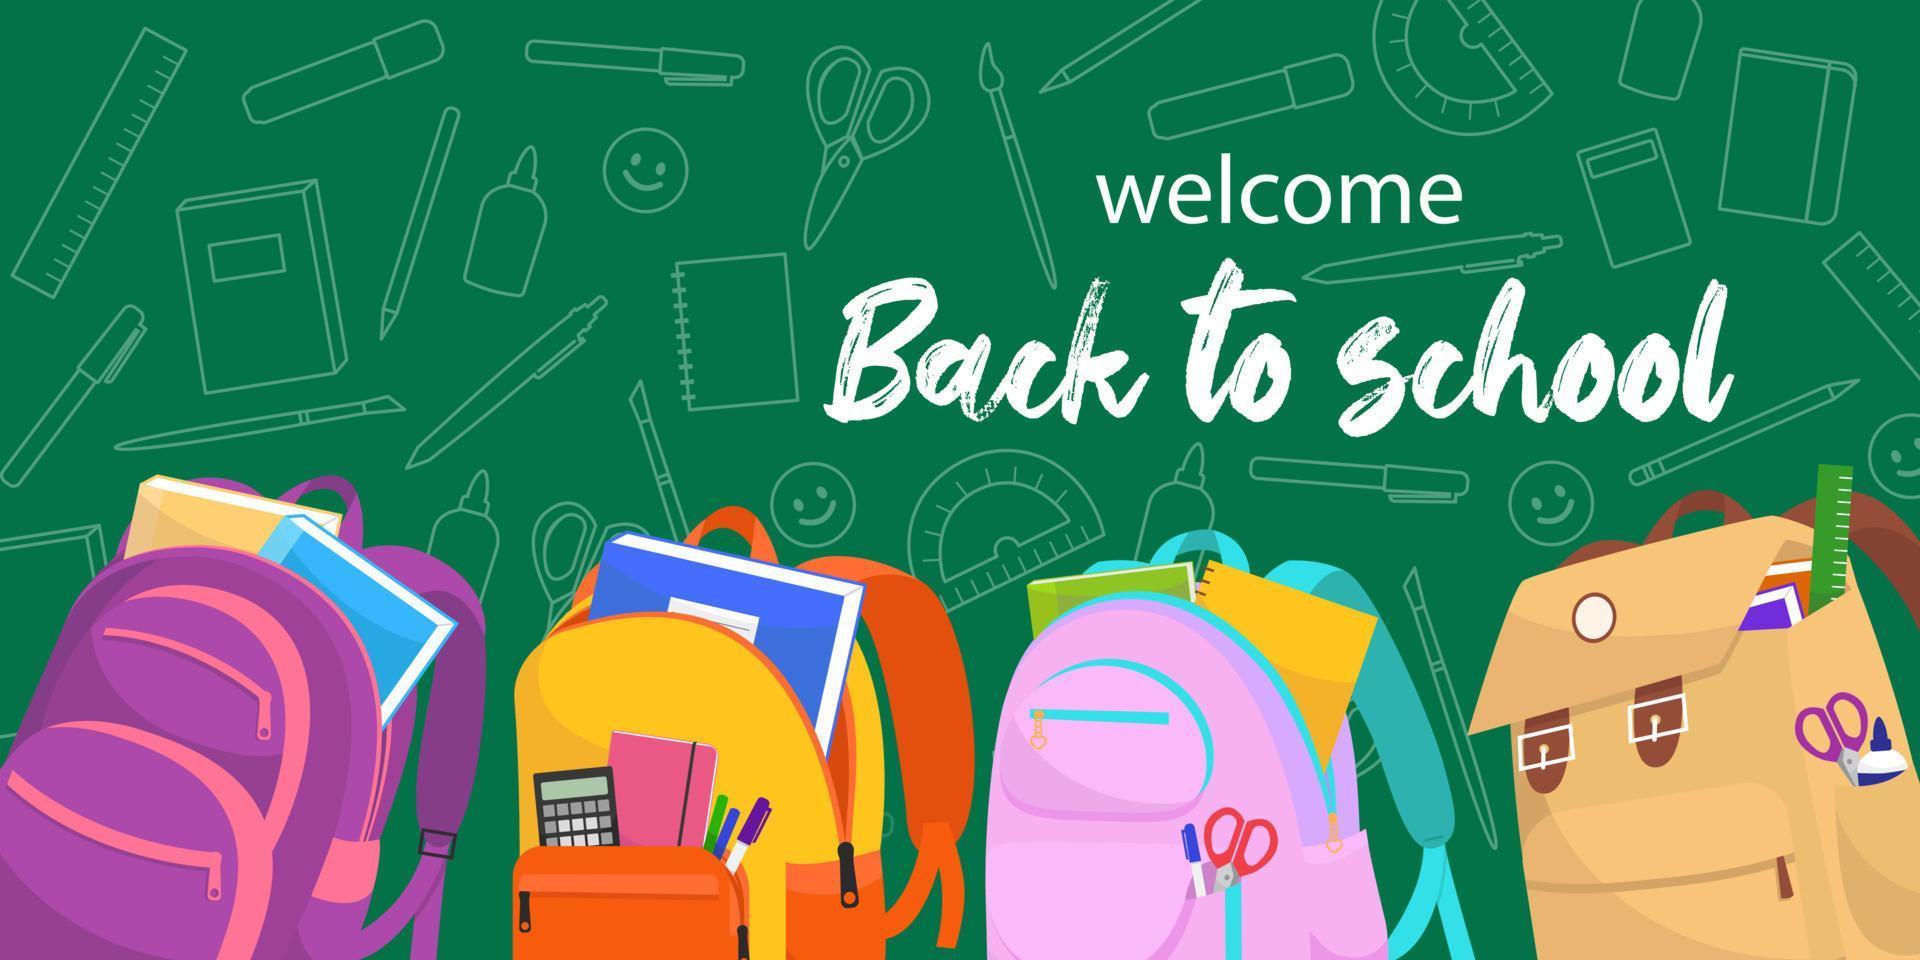 banner web di ritorno a scuola. sfondo verde con illustrazioni colorate di zaini e materiale didattico. vettore